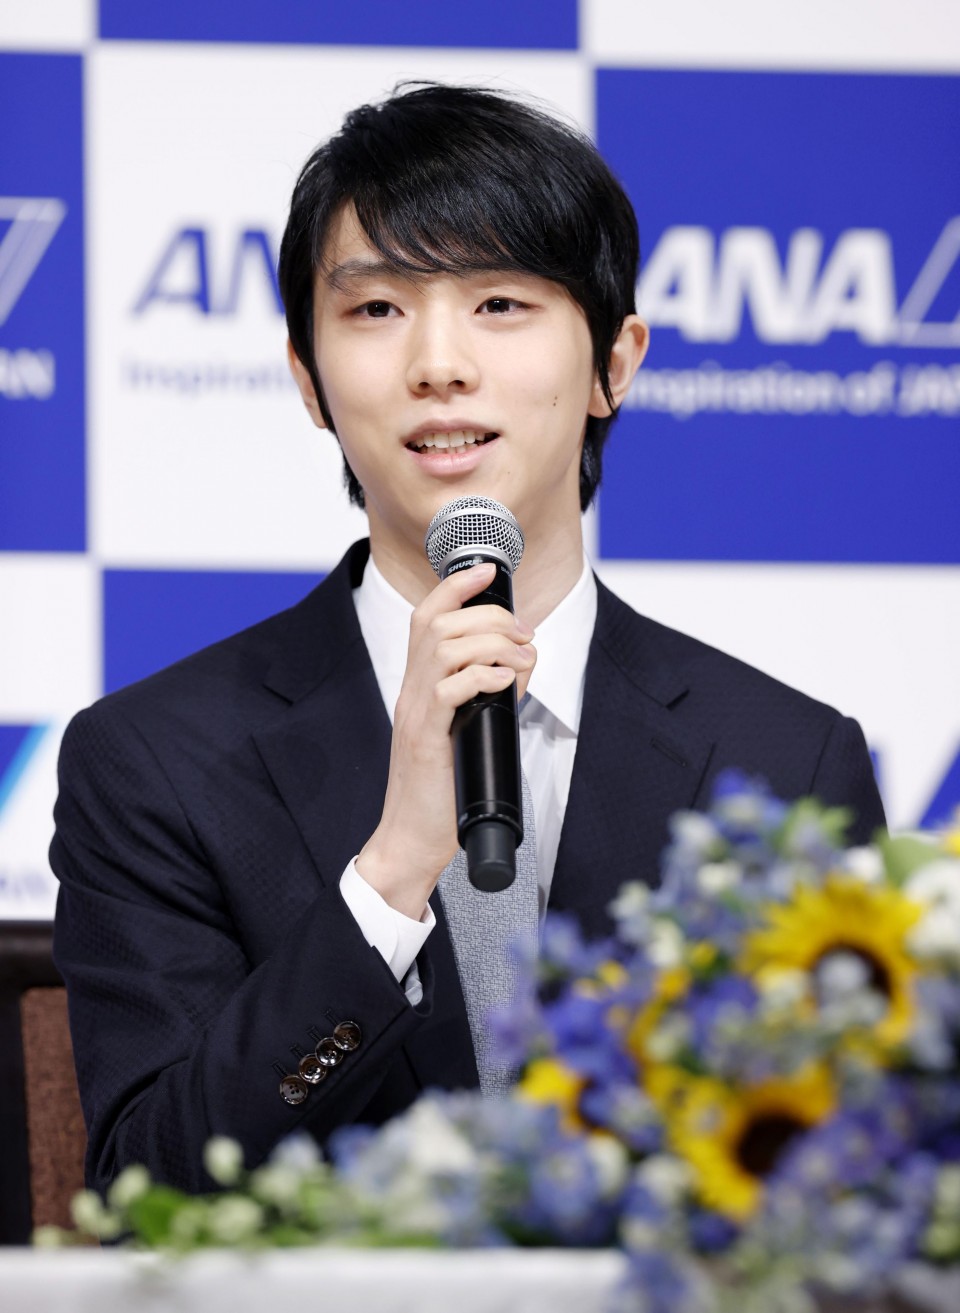 Hoàng tử sân băng Yuzuru Hanyu chính thức giải nghệ sau 12 năm, tuyên bố ở họp báo gây chấn động châu Á - Ảnh 2.